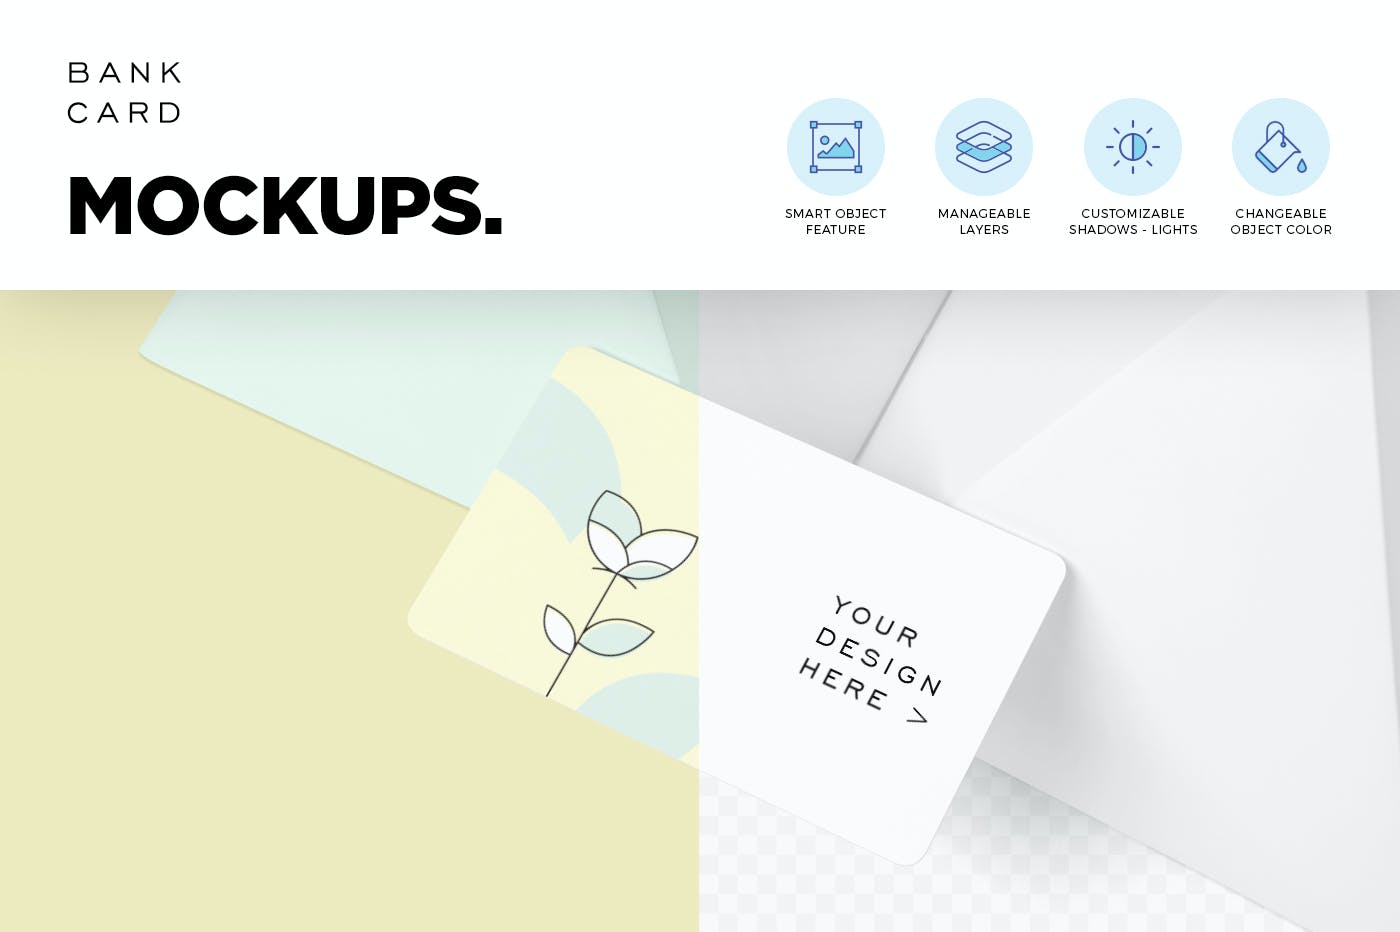 5个银行卡品牌设计样机贴图模板 5 Bank Card Mockups设计素材模板